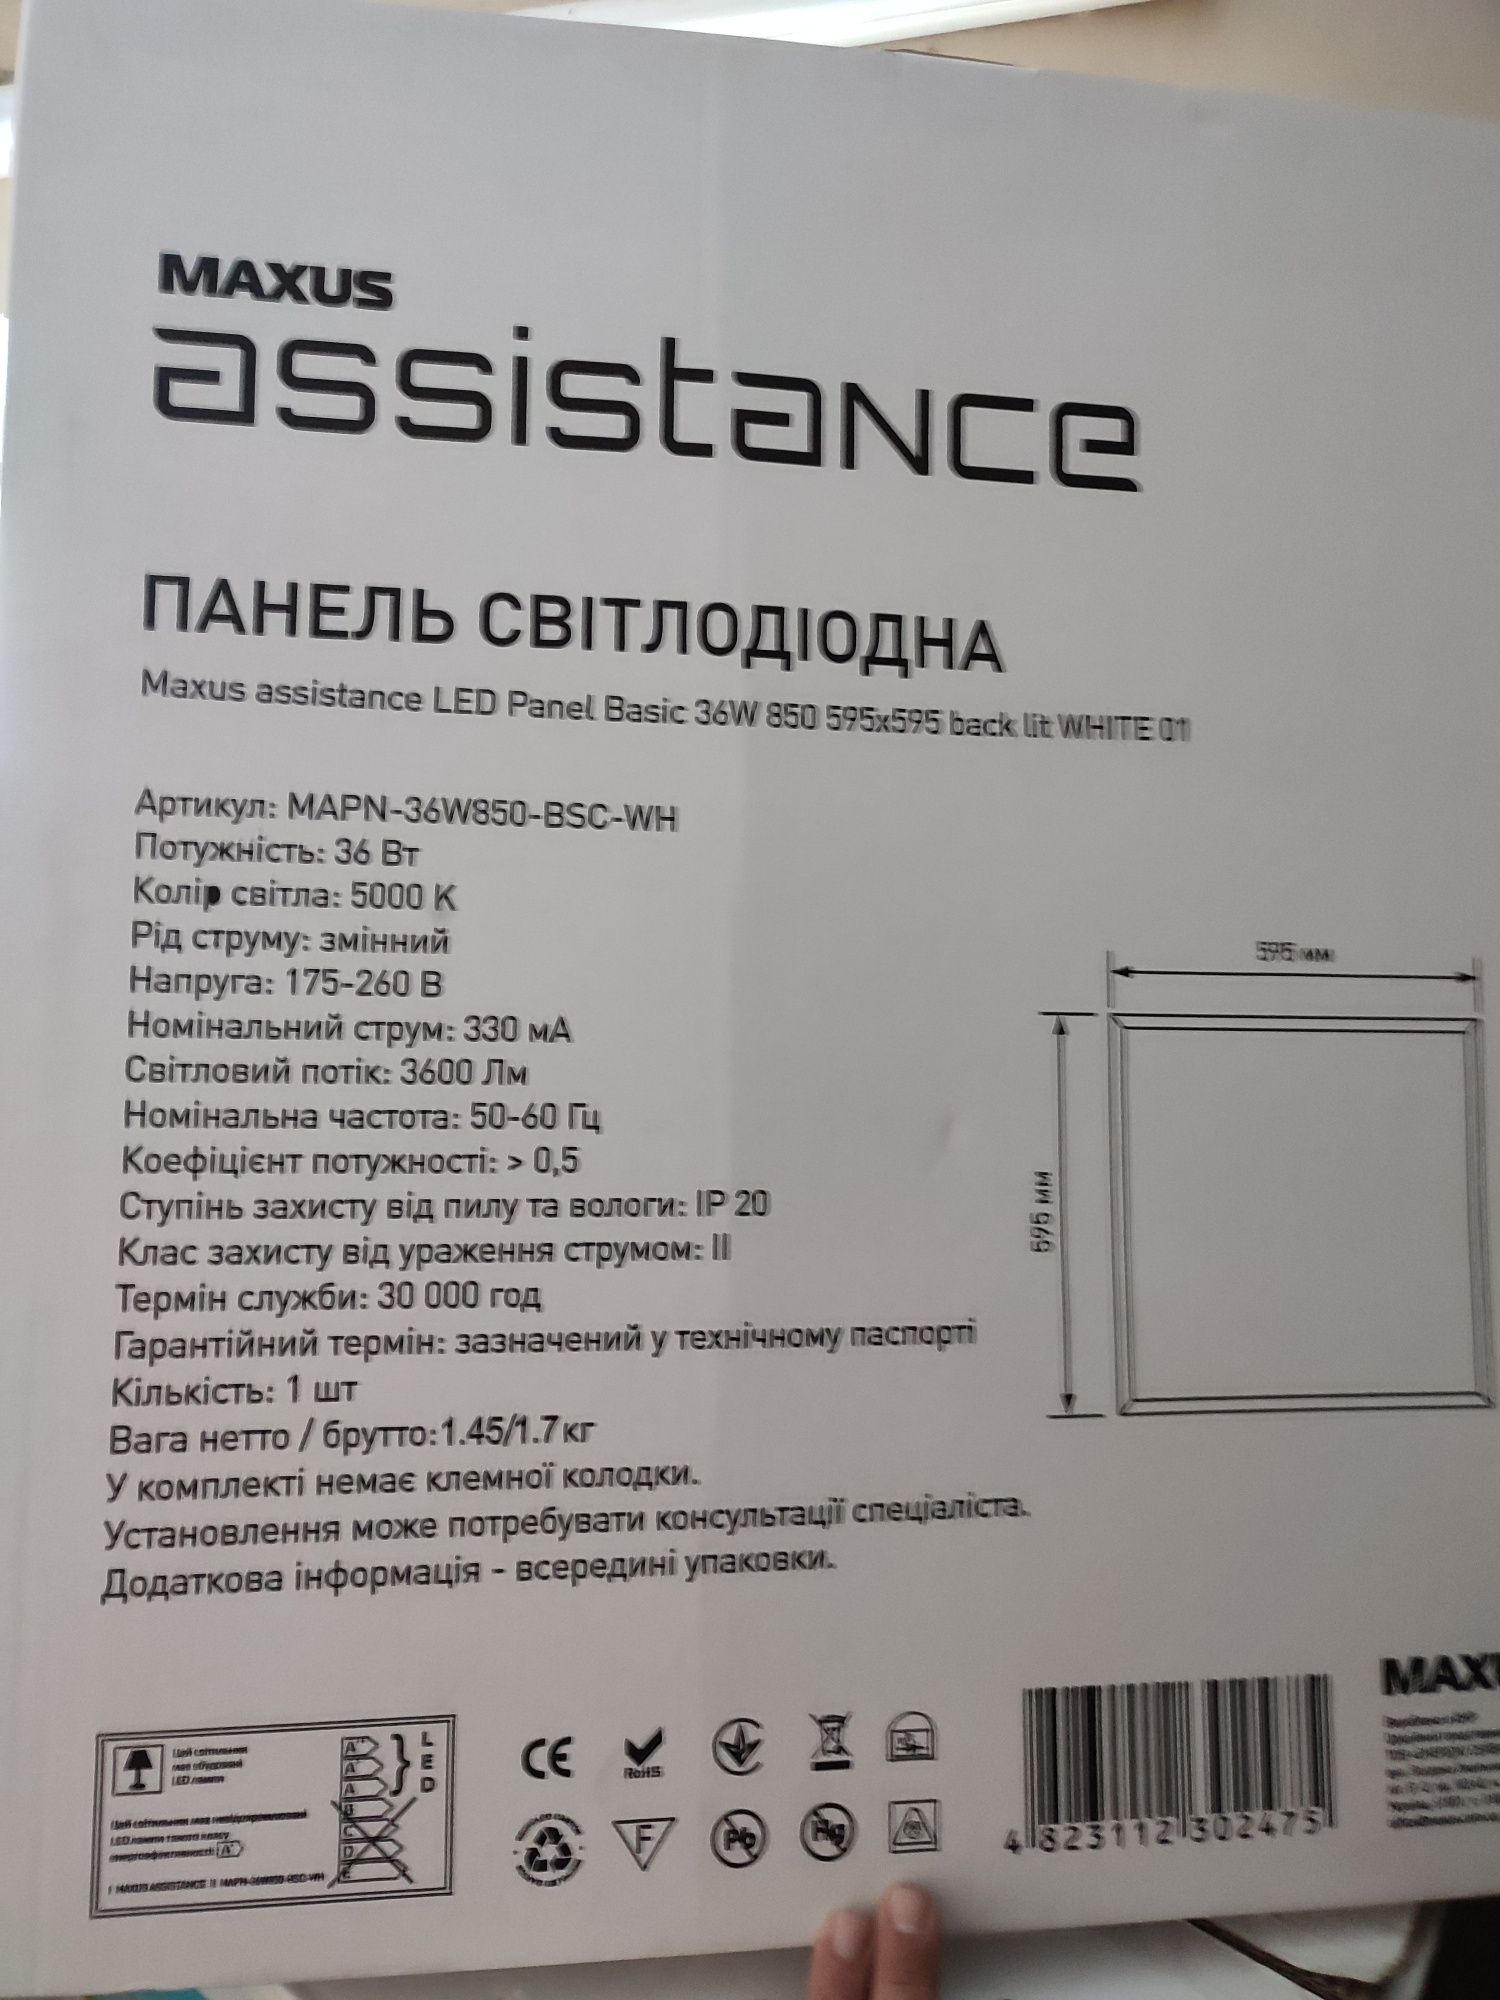 Панель світлодіодна Maxus assistance LED Panel Basic 36W 850 595x595 b